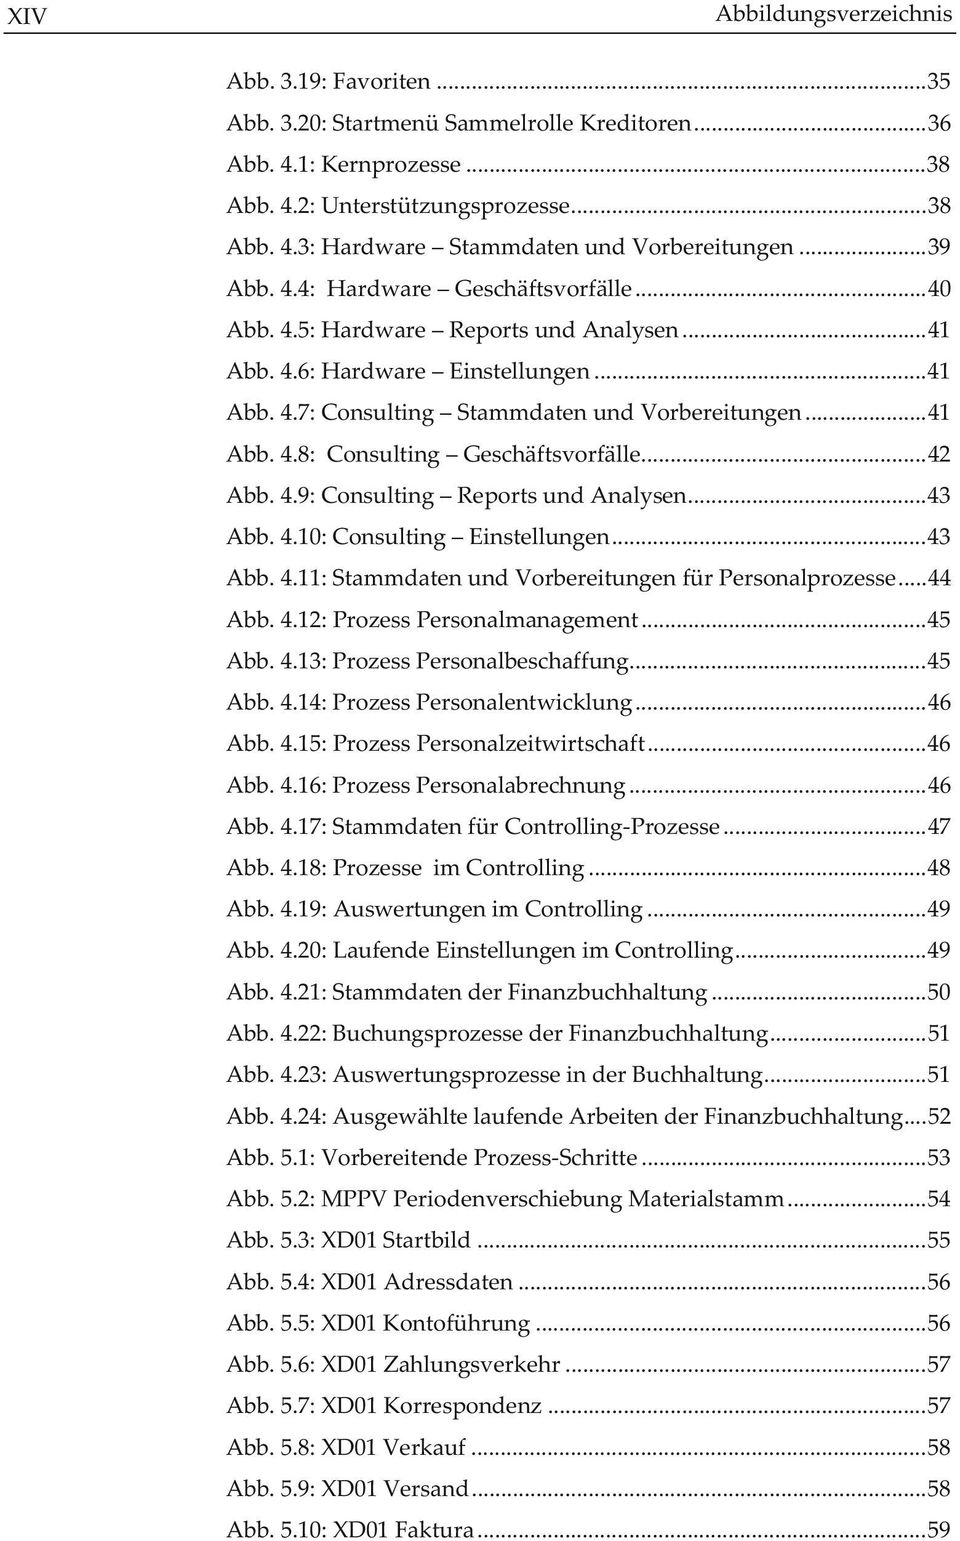 ..42 Abb. 4.9: Consulting Reports und Analysen...43 Abb. 4.10: Consulting Einstellungen...43 Abb. 4.11: Stammdaten und Vorbereitungen für Personalprozesse...44 Abb. 4.12: Prozess Personalmanagement.